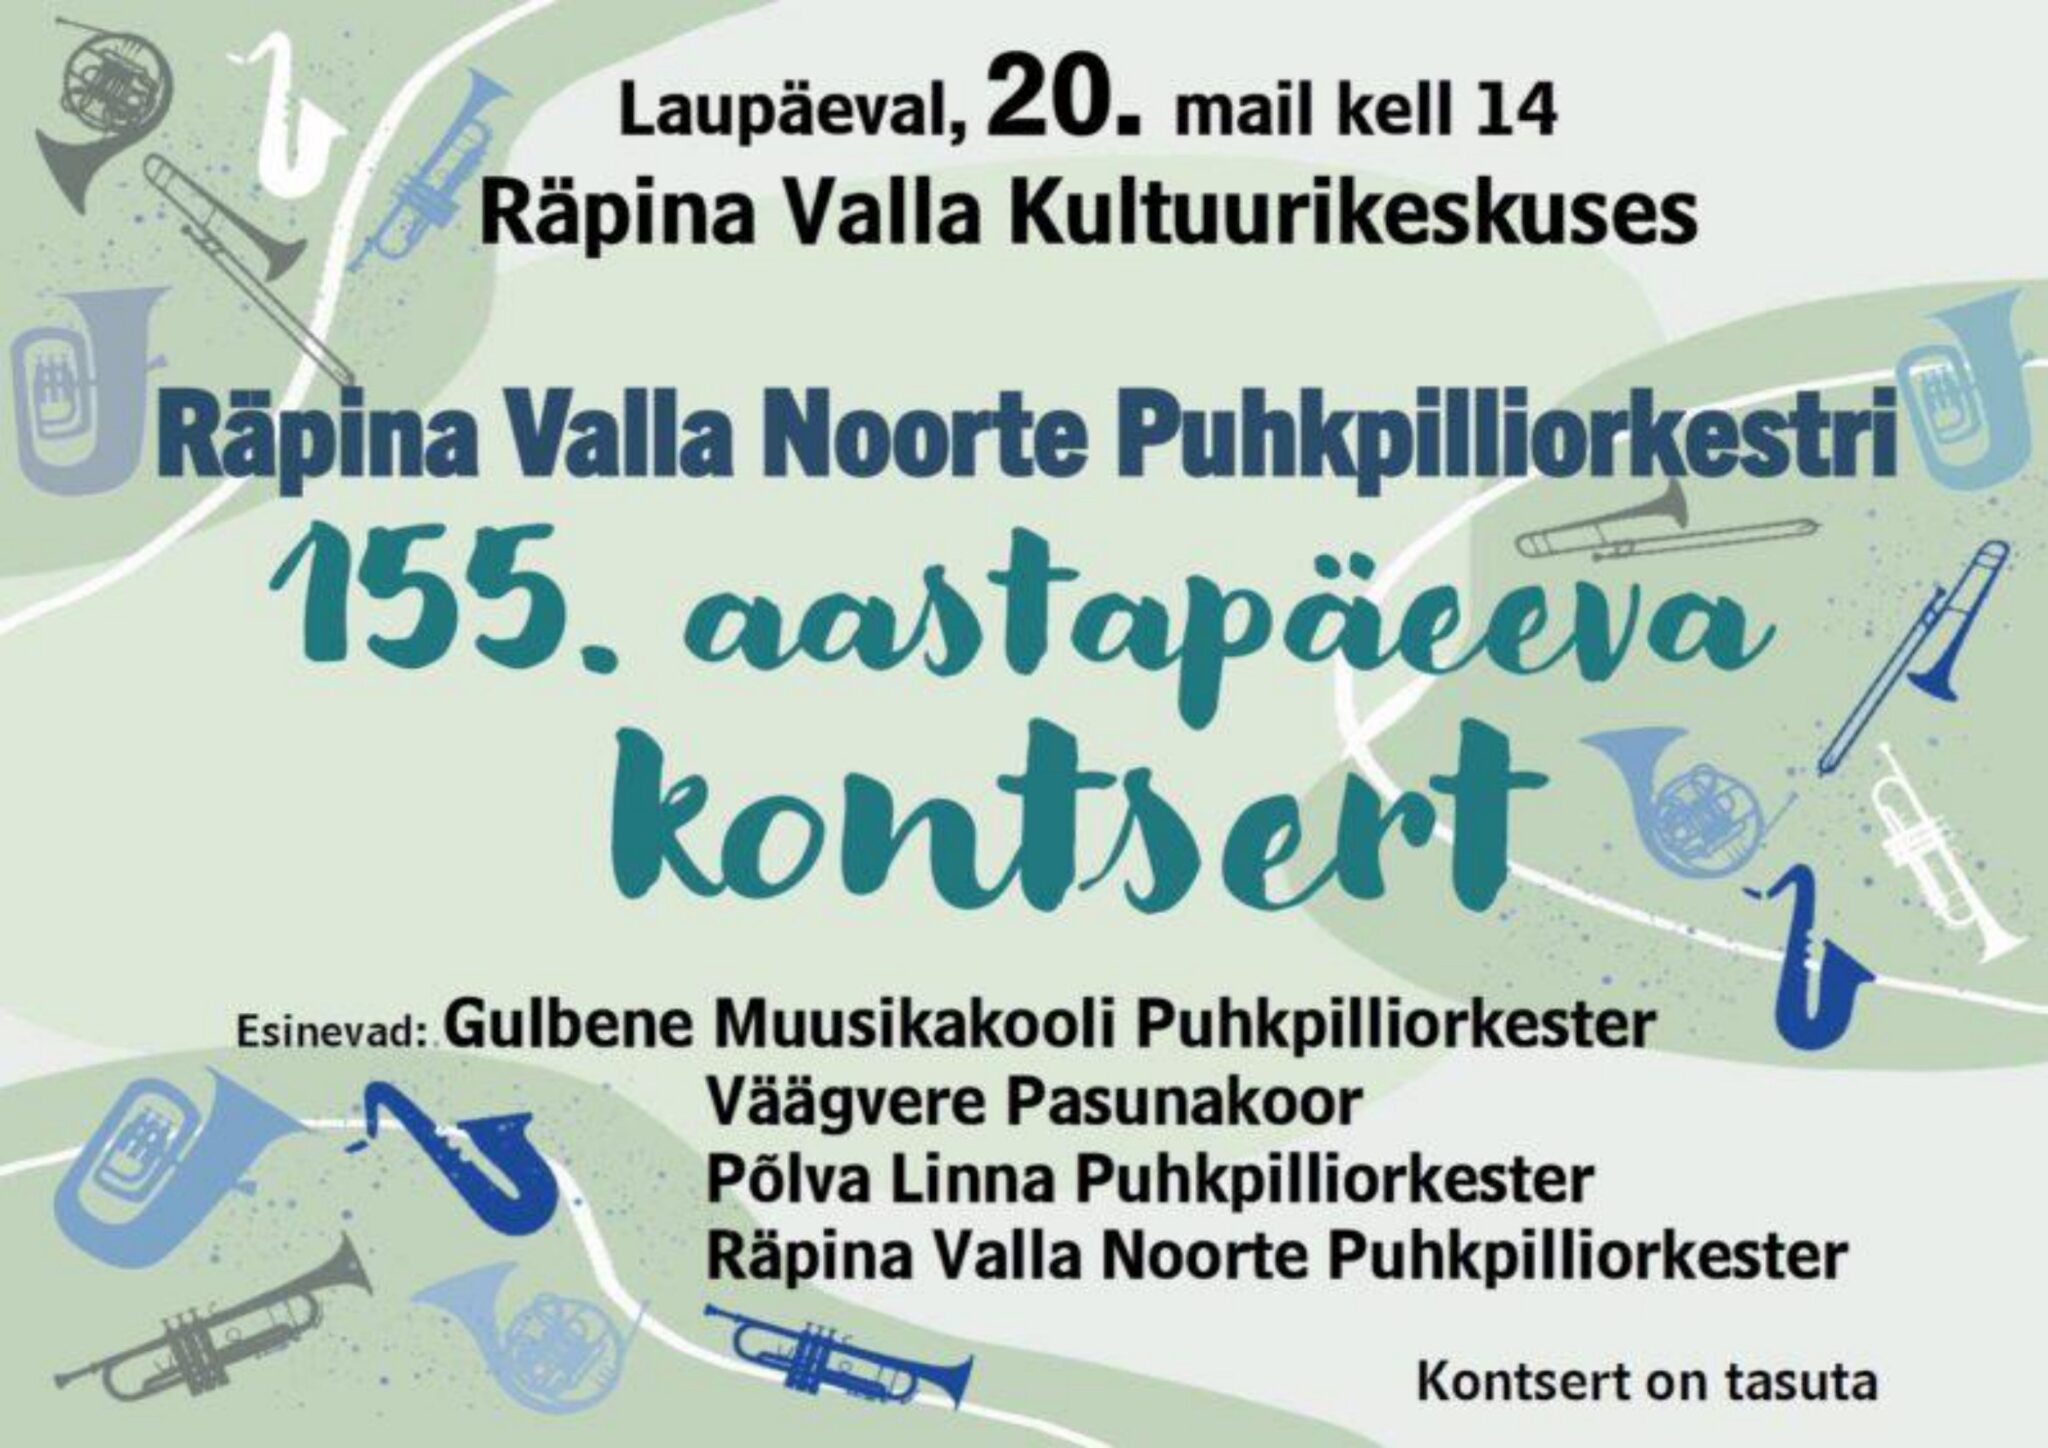 Aastapäevakontsert „Räpina Valla Noorte Puhkpilliorkester 155“ @ Räpina Valla Kultuurikeskus | Räpina | Põlva maakond | Eesti